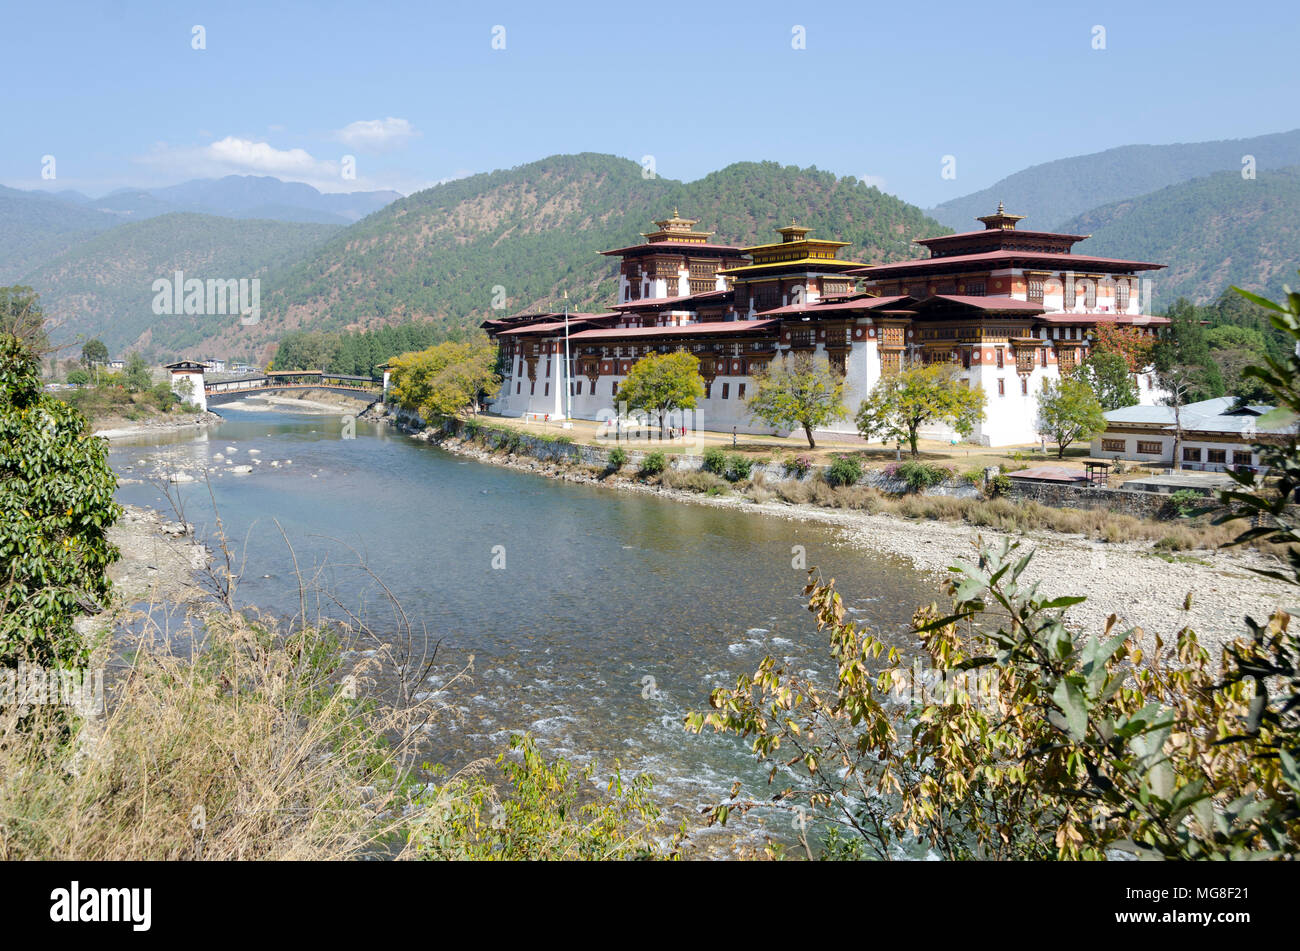 Festung, oder Dzong, Punakha, Bhutan Stockfoto